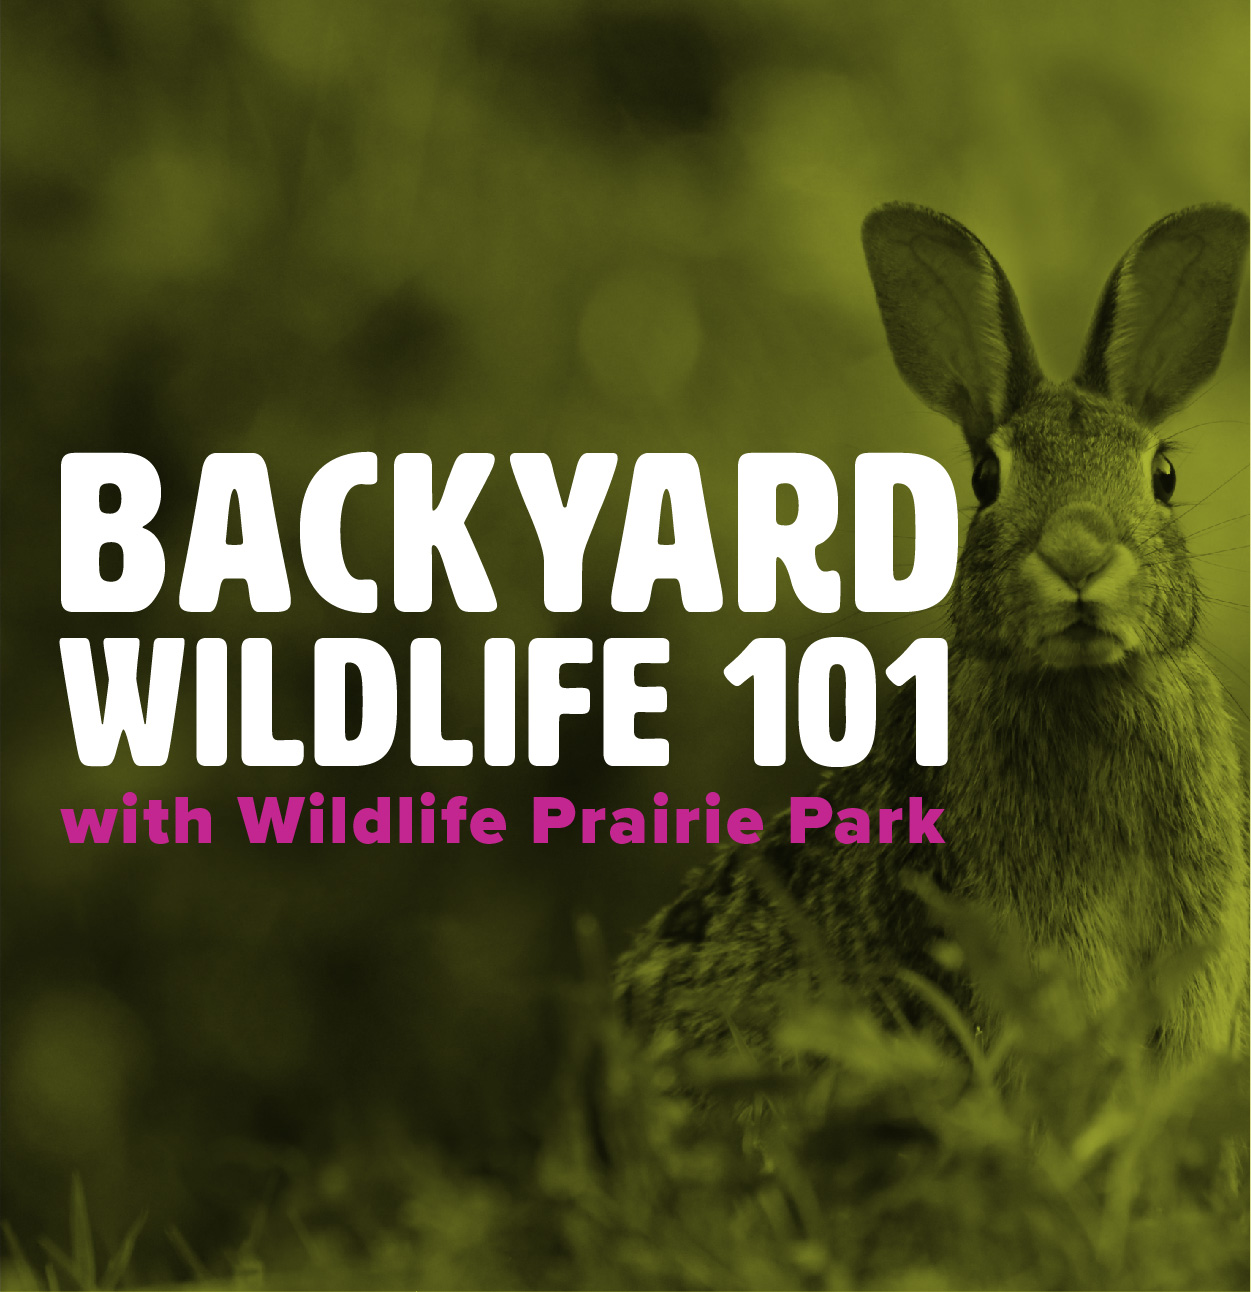 Backyard Wildlife 101 with Wildlife Prairie Park